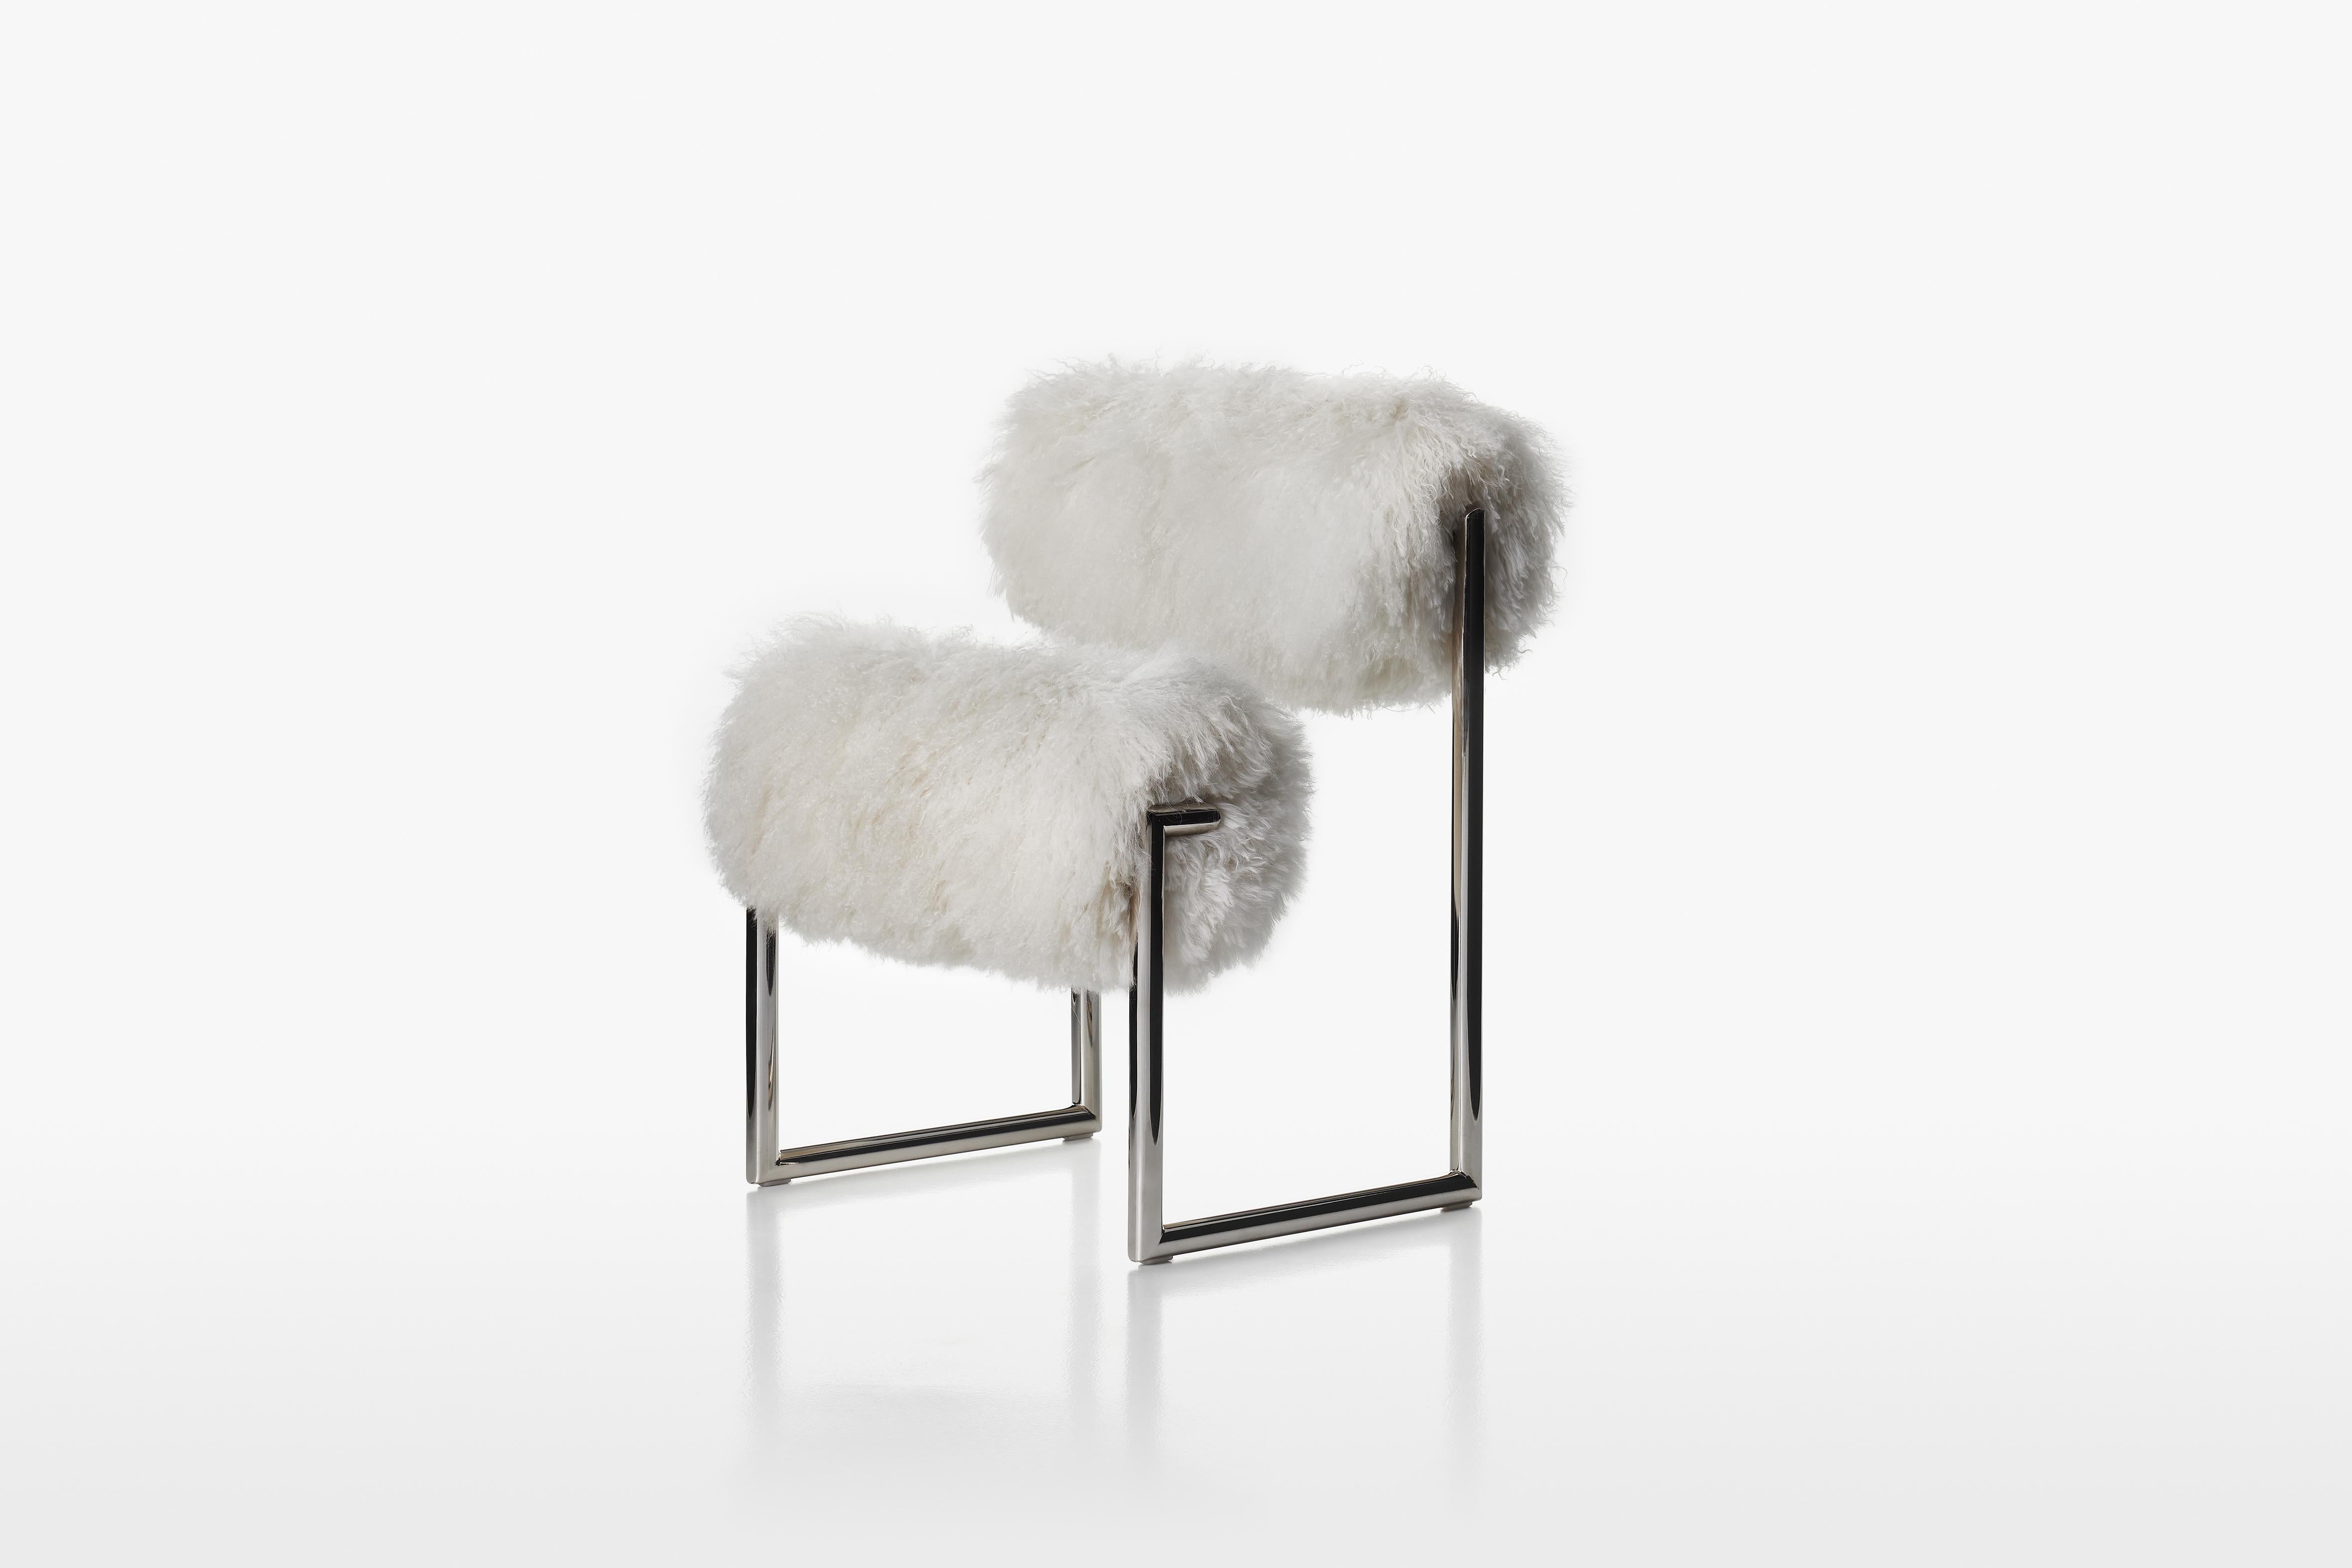 Avec une esthétique qui parle le langage du futur, le fauteuil Due Più peut être considéré comme l'un des projets-manifestes de Nanda Vigo, la synthèse de ses deux âmes : son esprit de géométrie évident dans la structure métallique minimale